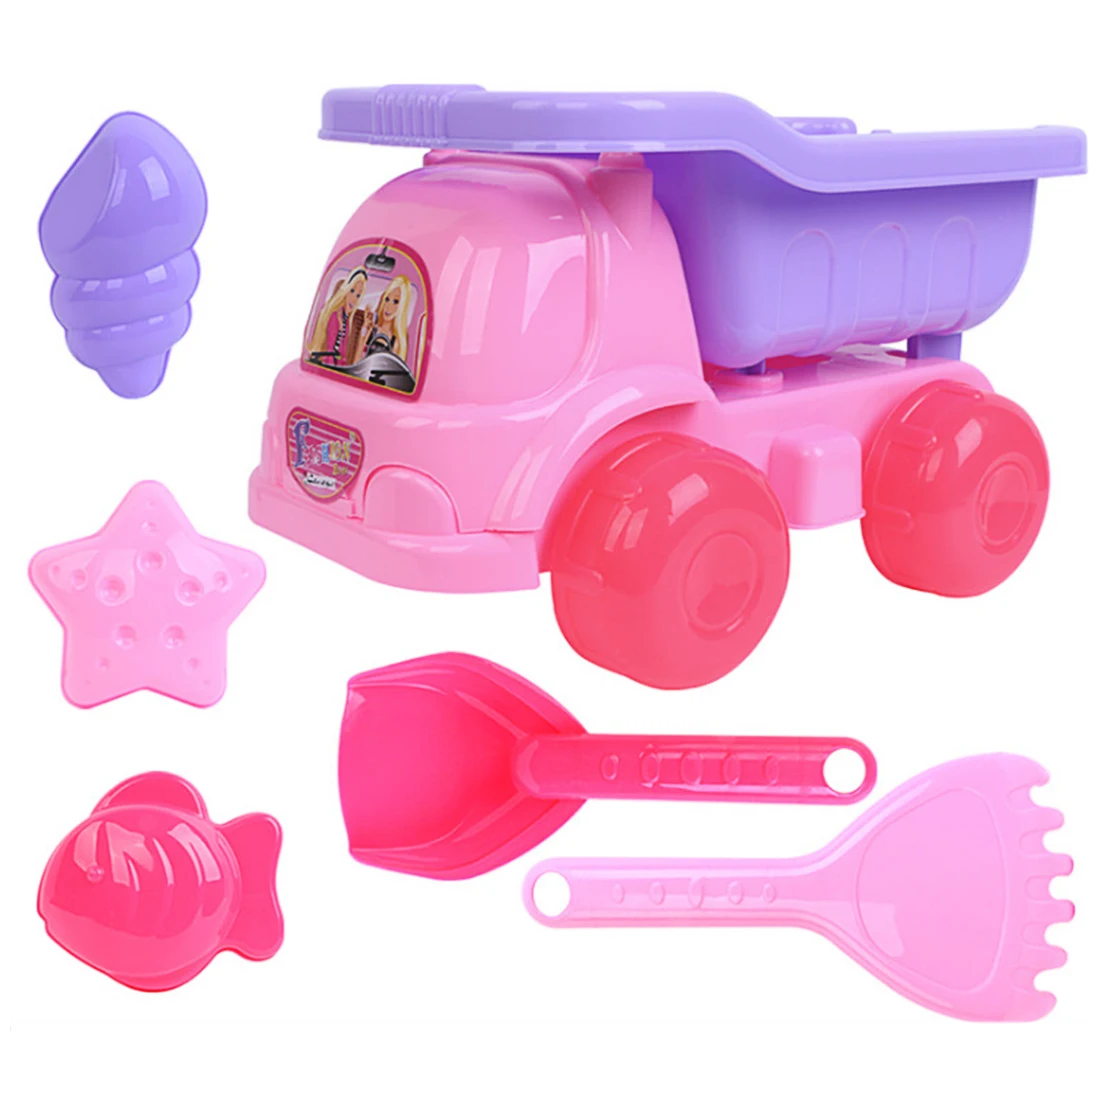 Горячие летние пляжные игрушки, игровой набор для песка, обучающая игрушка с маленькой принцессой, пляжный багги, игрушка для детей, 3 размера - Цвет: 1